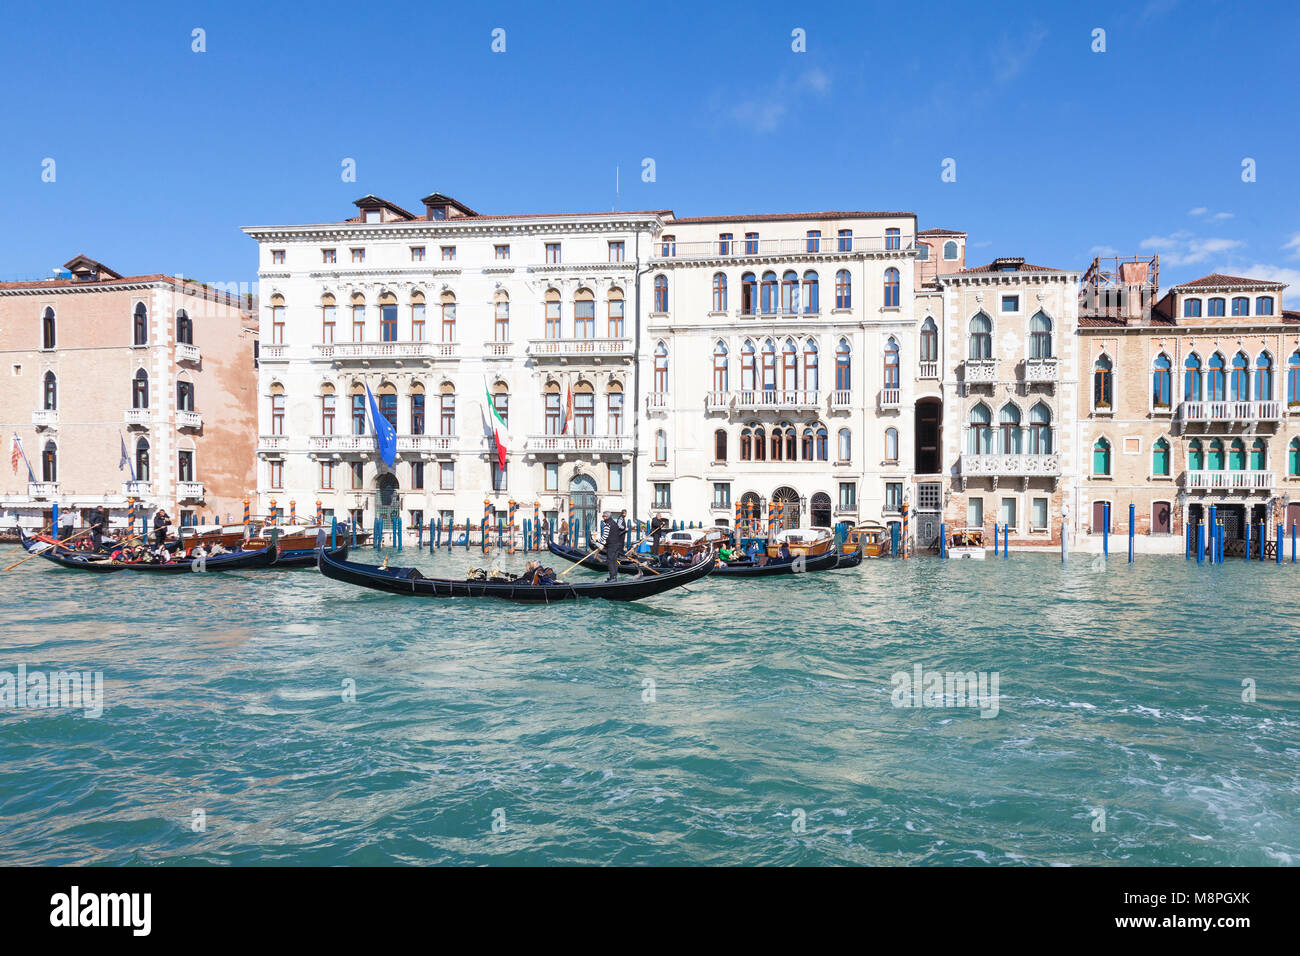 Las góndolas con grupos de turistas en el Grand Canal y Basino San Marco, Venecia, Véneto, Italia con el Palazzo Flangini Fini, el Palazzo Manolesso, Palazzo Foto de stock